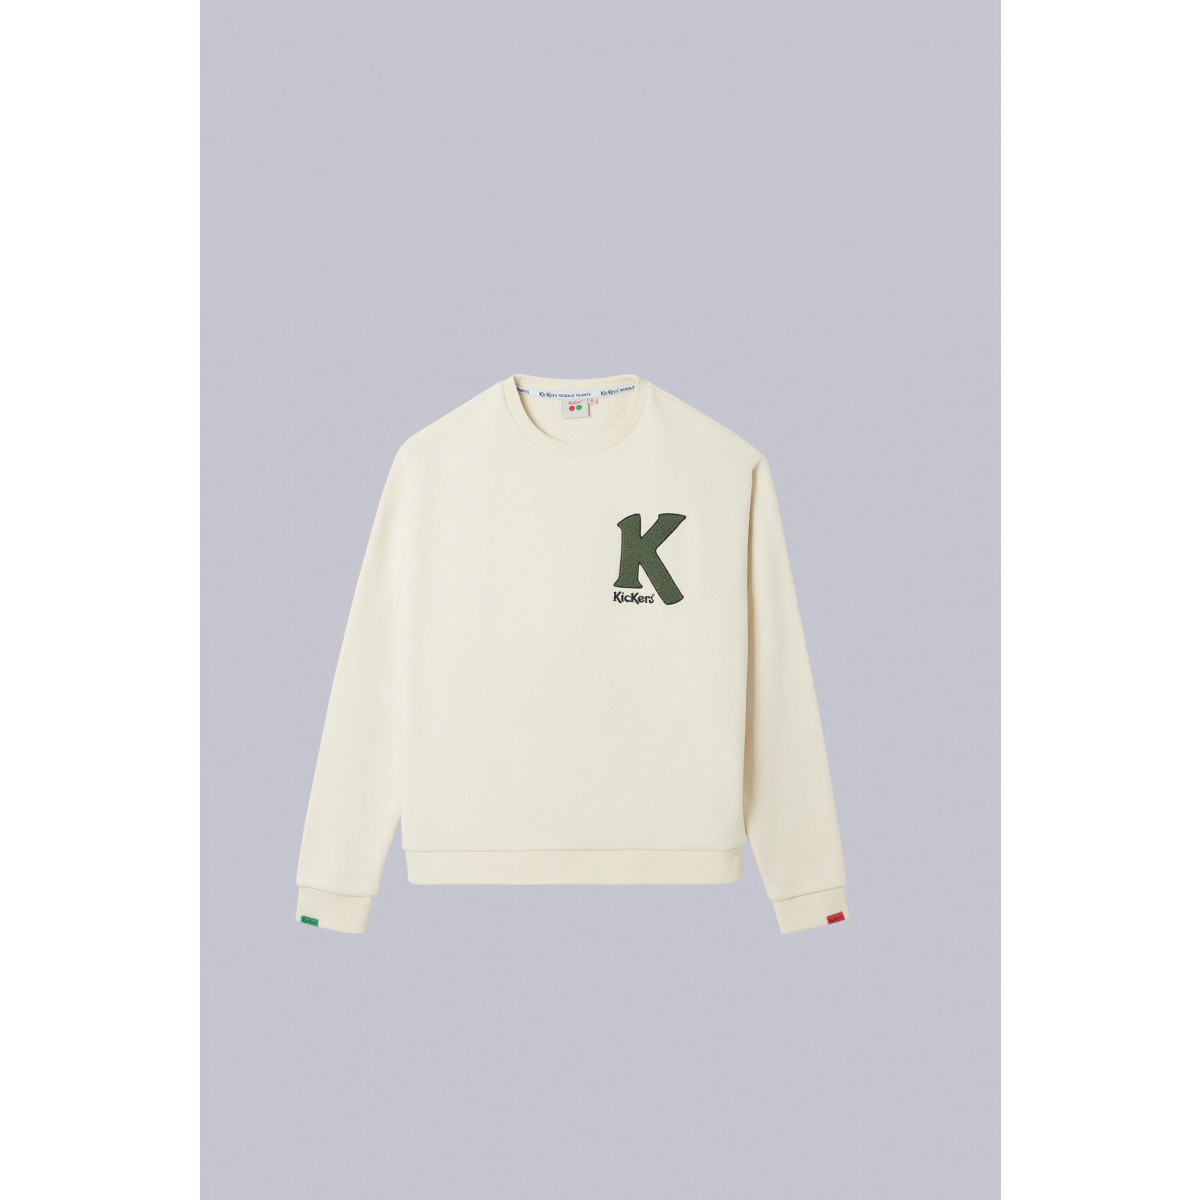 Odjeća Sportske majice Kickers Big K Sweater Bež